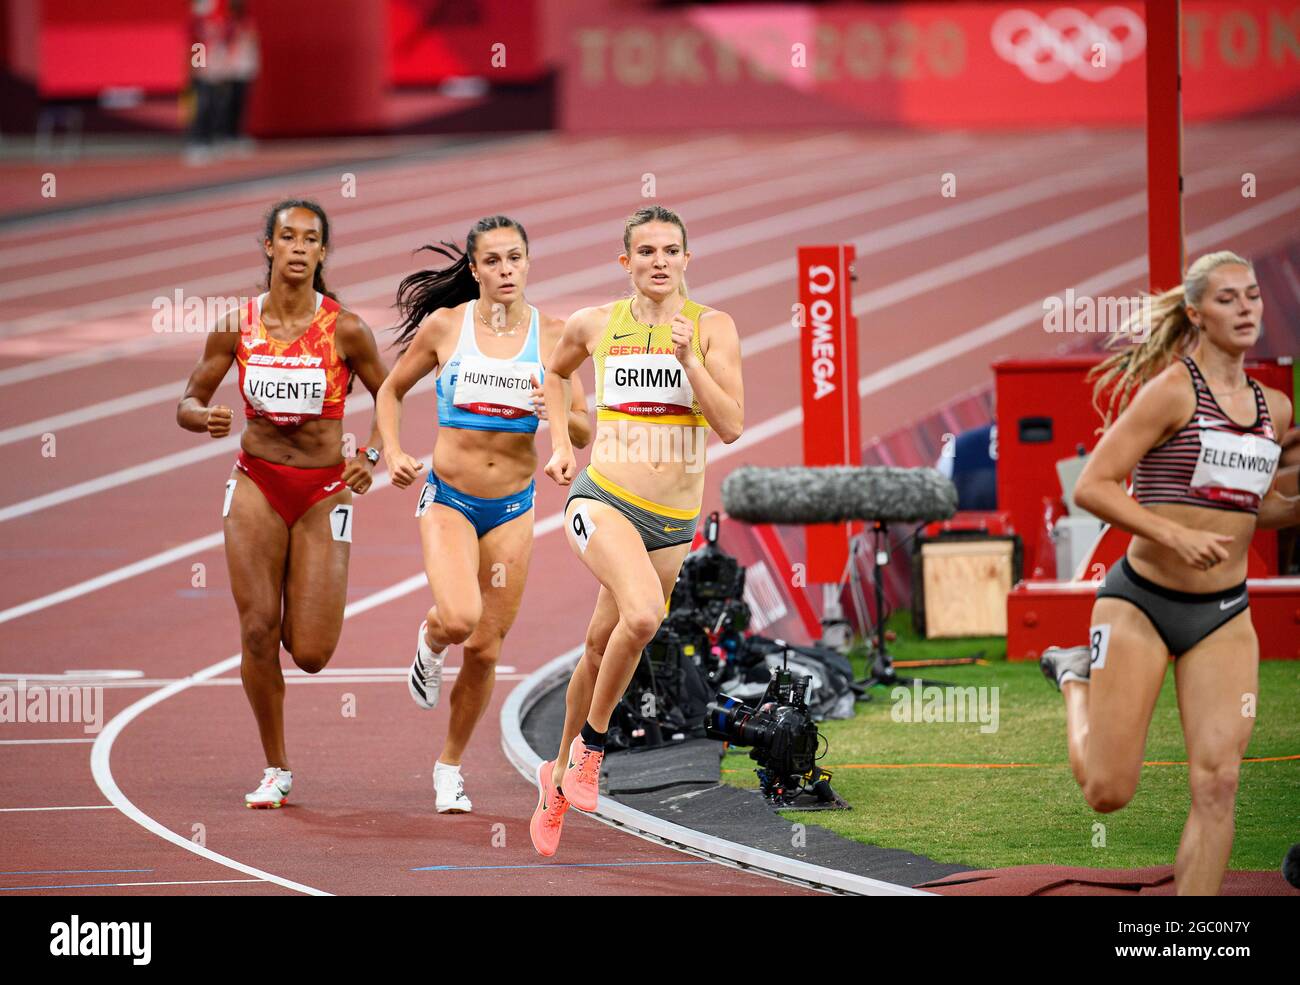 Vanessa GRIMM (GER) terza azione da sinistra a destra. Atletica, eptathlon, 800 m di corsa, donne 800 m, il 5 agosto, 2021 Giochi Olimpici estivi 2020, dal 23 luglio. - 08.08.2021 a Tokyo/Giappone. Foto Stock